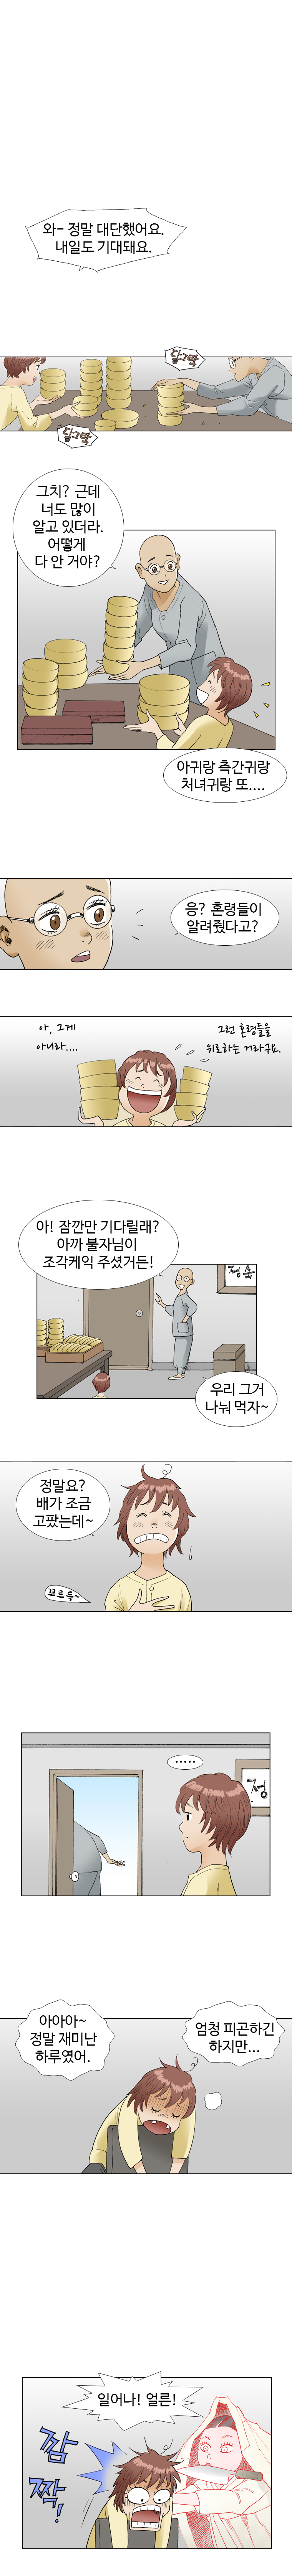 웹툰 백초월 4화-11